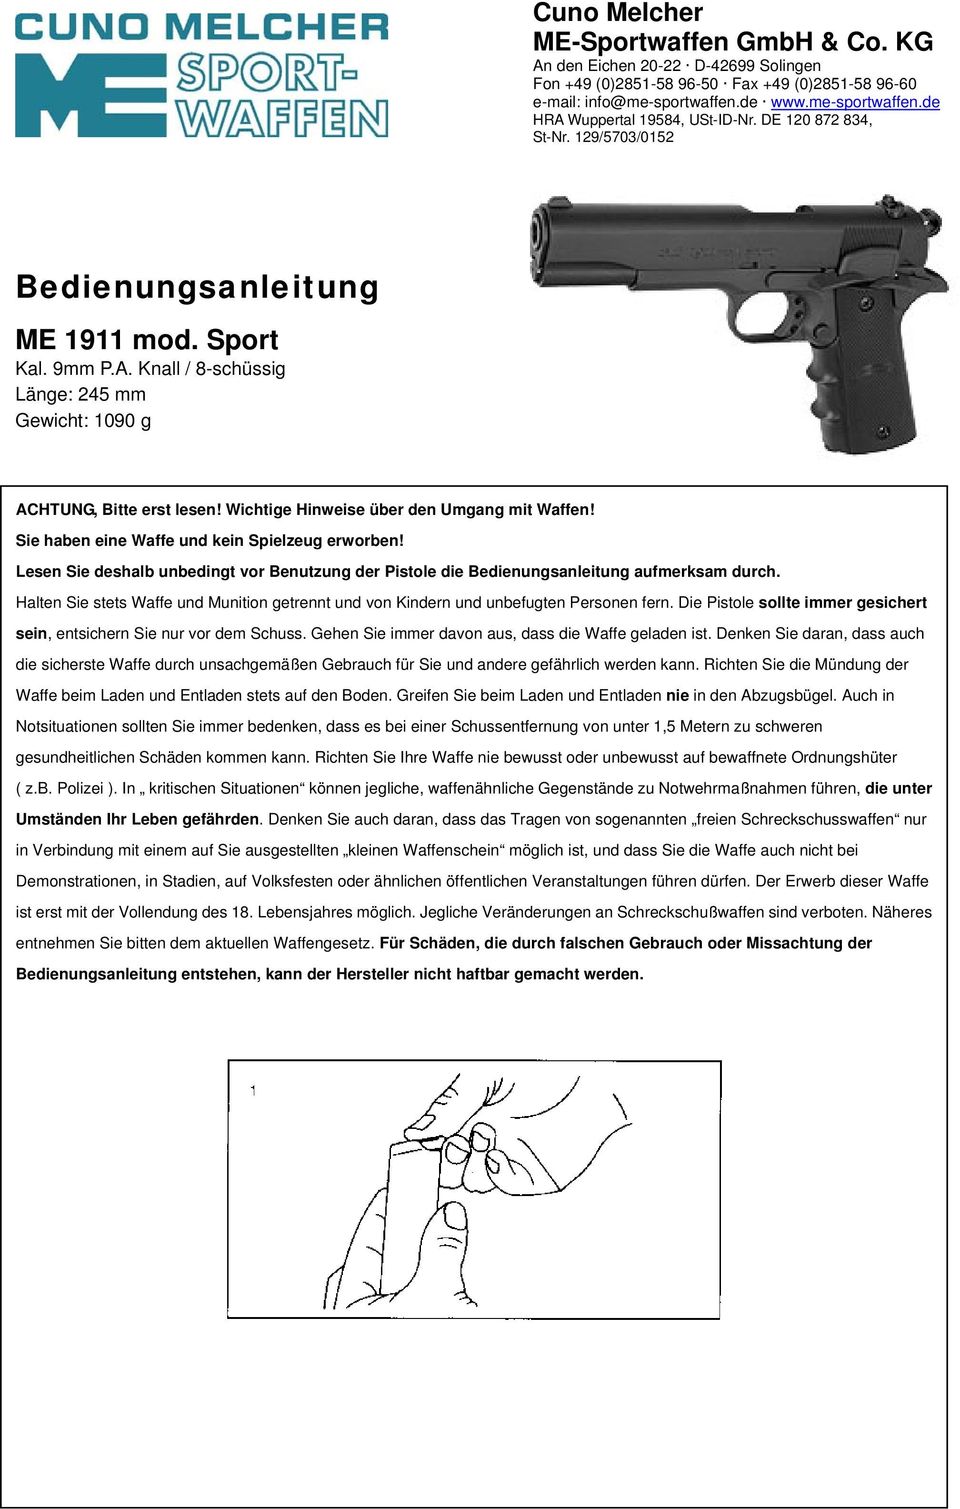 Wichtige Hinweise über den Umgang mit Waffen! Sie haben eine Waffe und kein Spielzeug erworben! Lesen Sie deshalb unbedingt vor Benutzung der Pistole die Bedienungsanleitung aufmerksam durch.